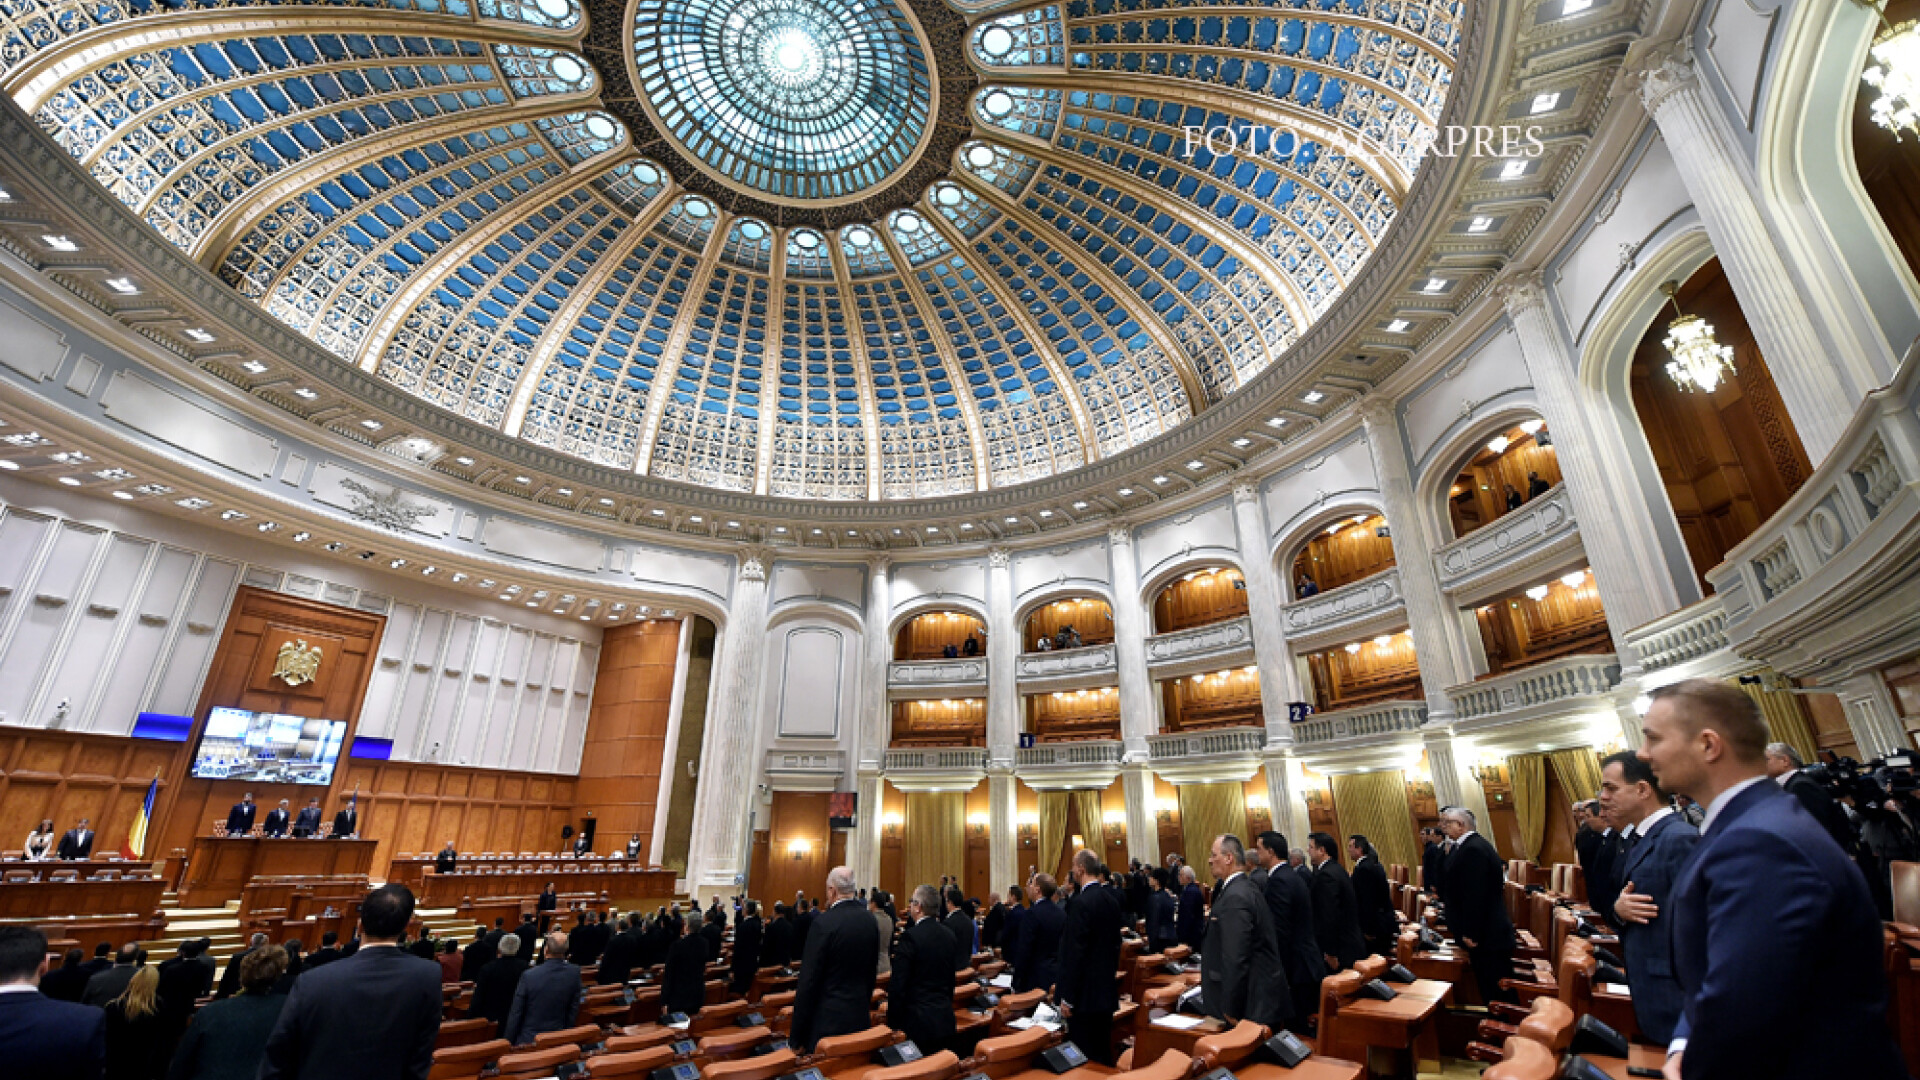 Sedinta comuna solemna a Senatului si Camerei Deputatilor